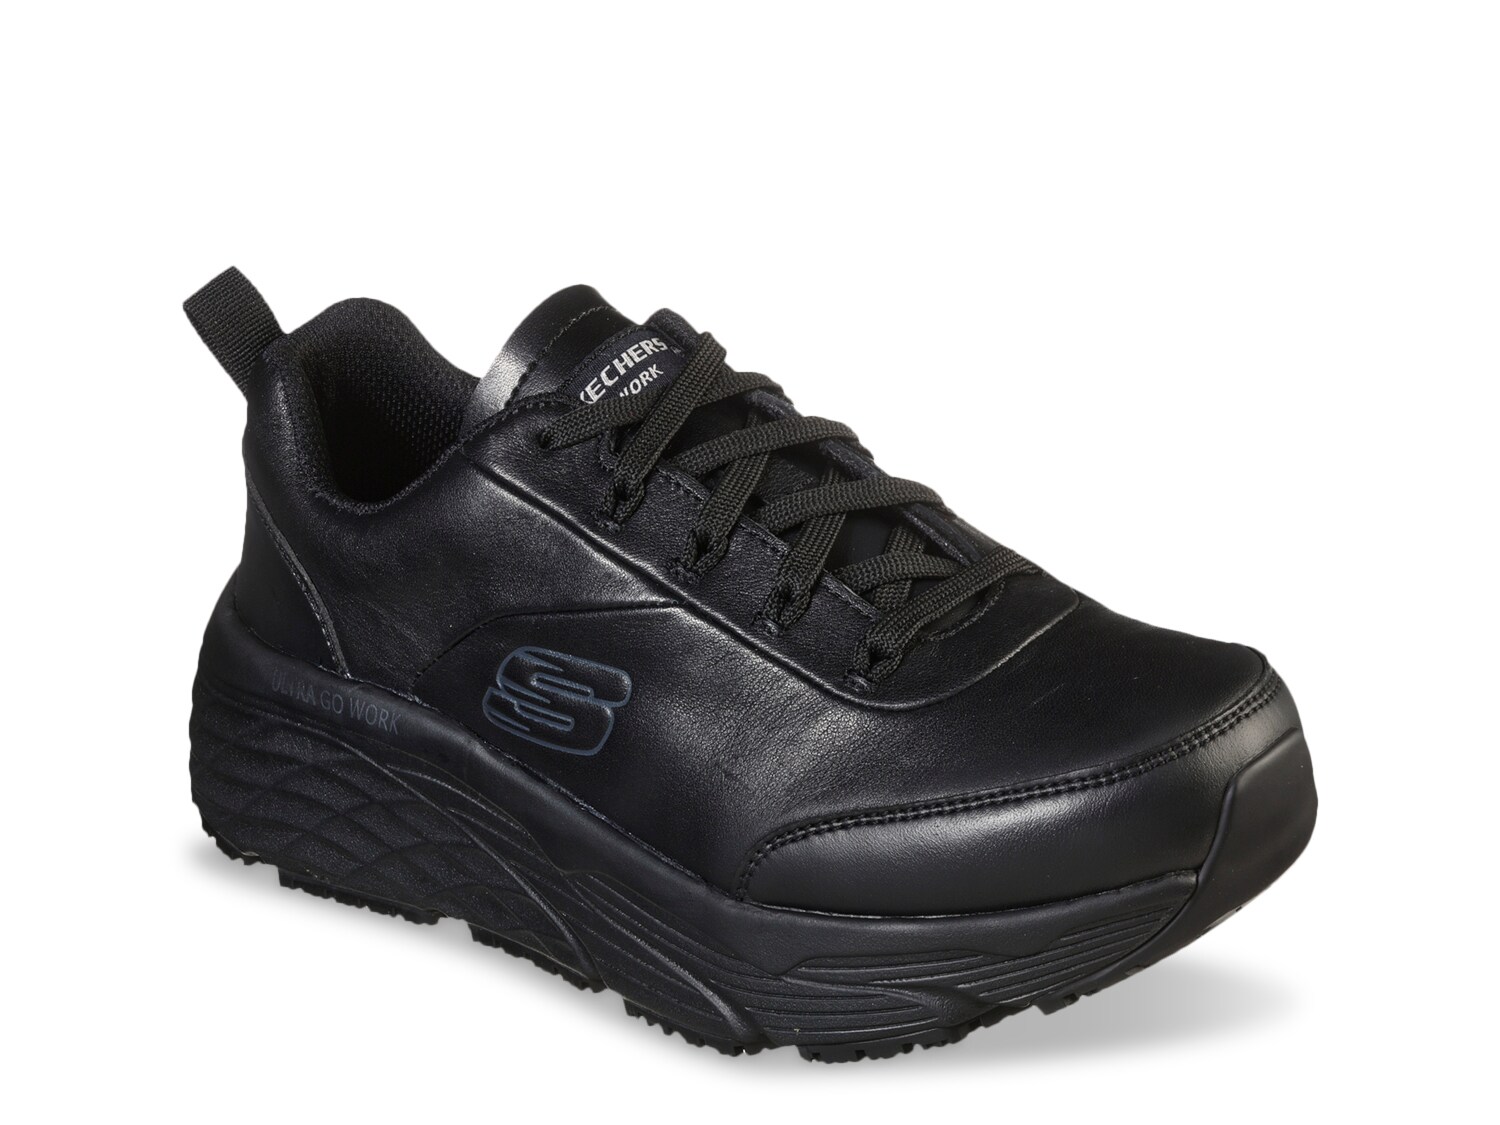 Work Boots \u0026 Steel Toe Shoes | DSW